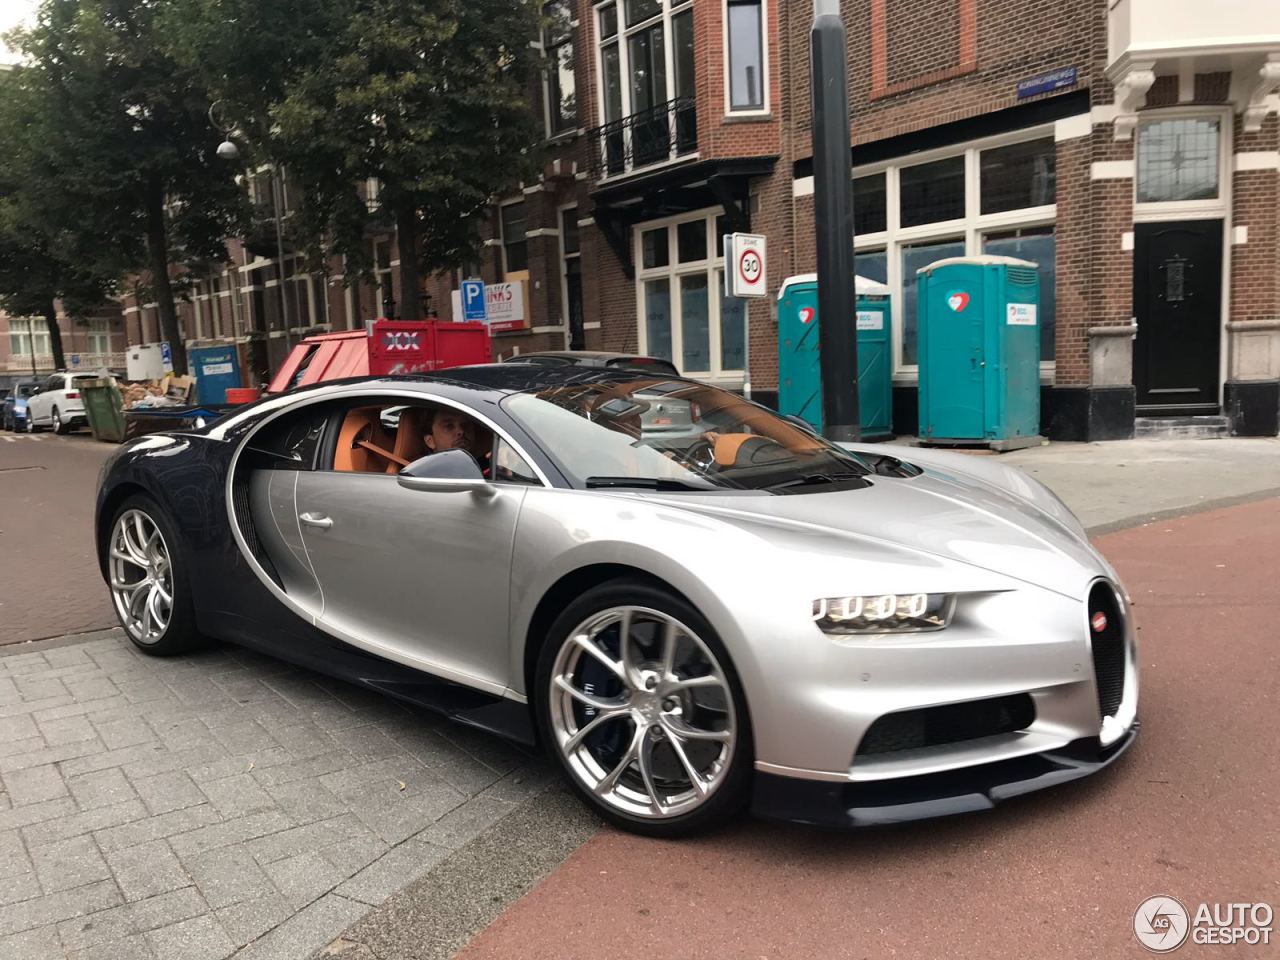 Spot van de dag: Bugatti Chiron in Amsterdam